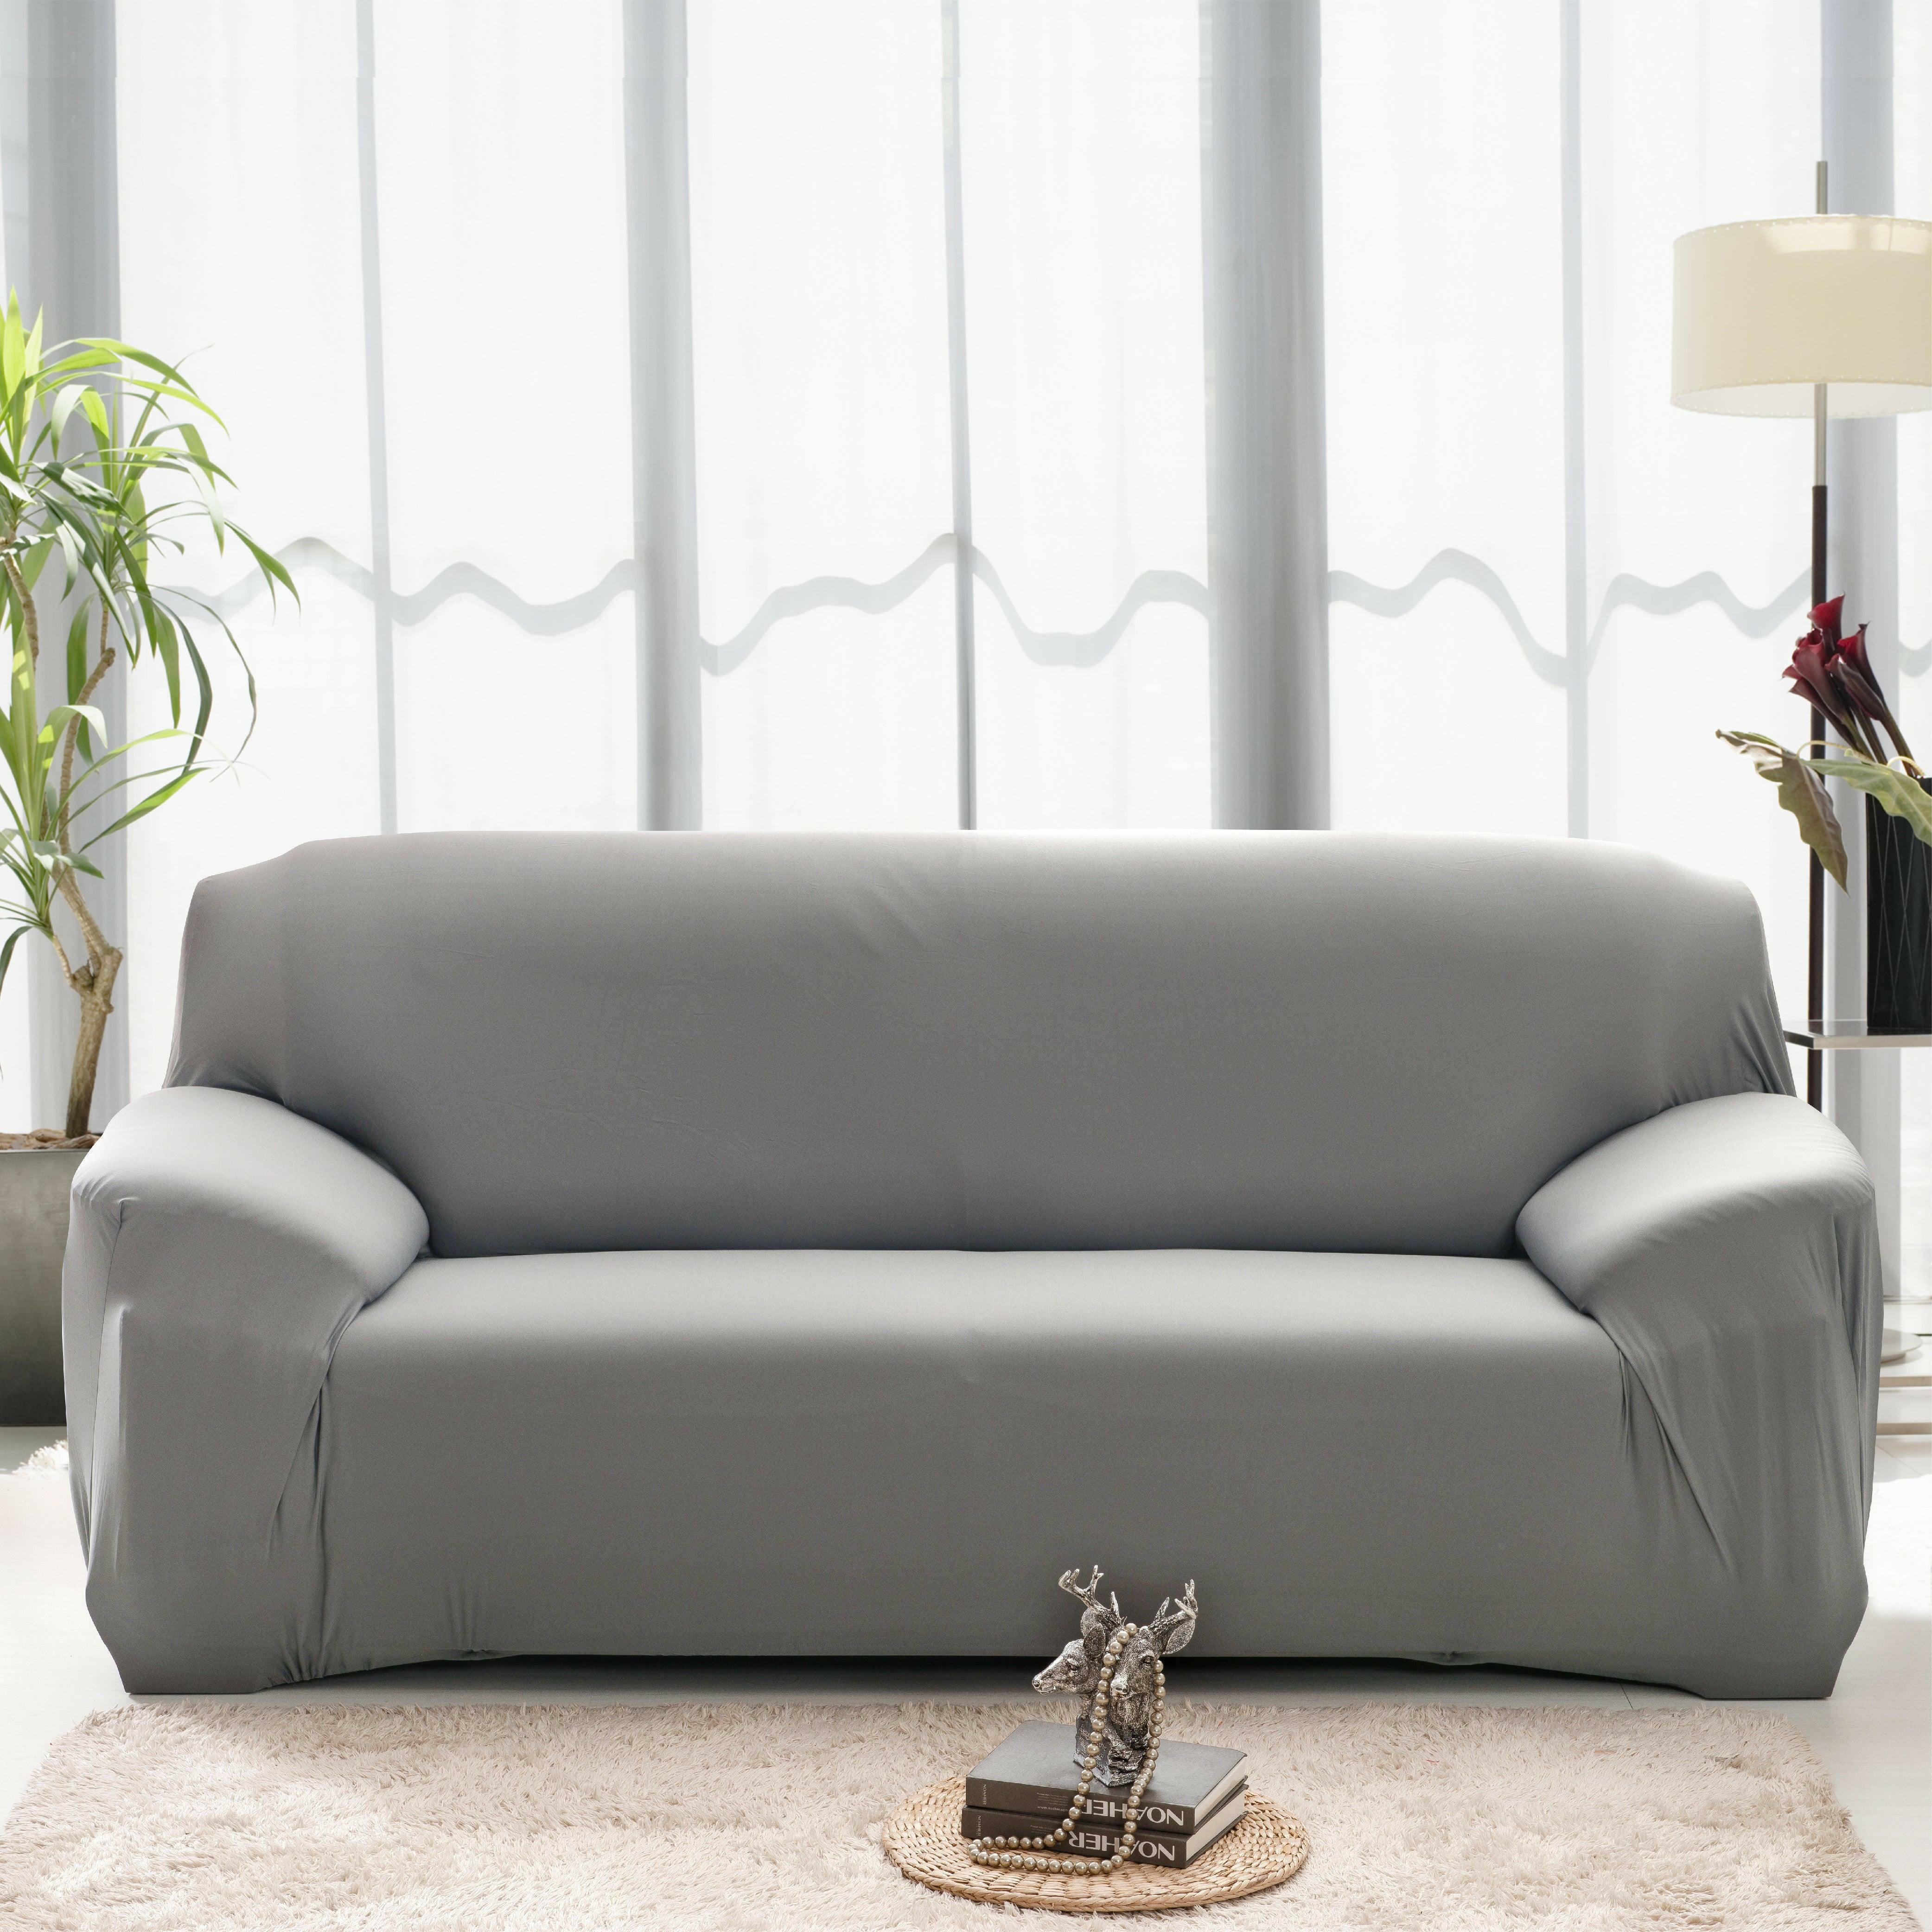 Hyper Cover Stretch Sofa Cover Plain Colour Grey | Sofa Covers | Brilliant Home Living